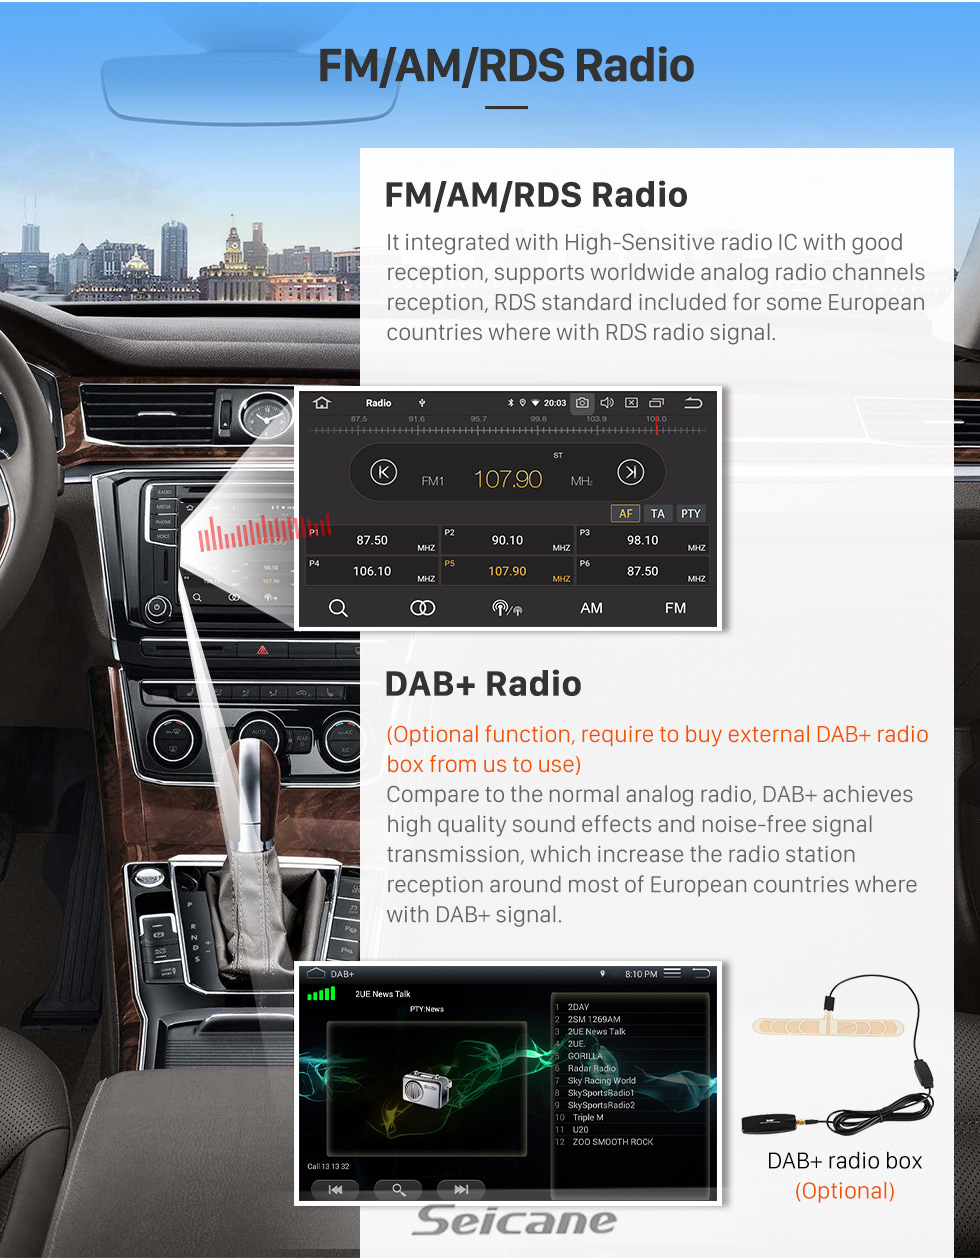 Seicane 10.1 pulgadas Android 11.0 Radio Bluetooth para 2015 2016 2017 Toyota CAMRY 3G WiFi Sistema de navegación GPS TPMS DVR OBD II Cámara trasera AUX Reposacabezas Monitor Control USB SD Video 3G WiFi Pantalla táctil capacitiva